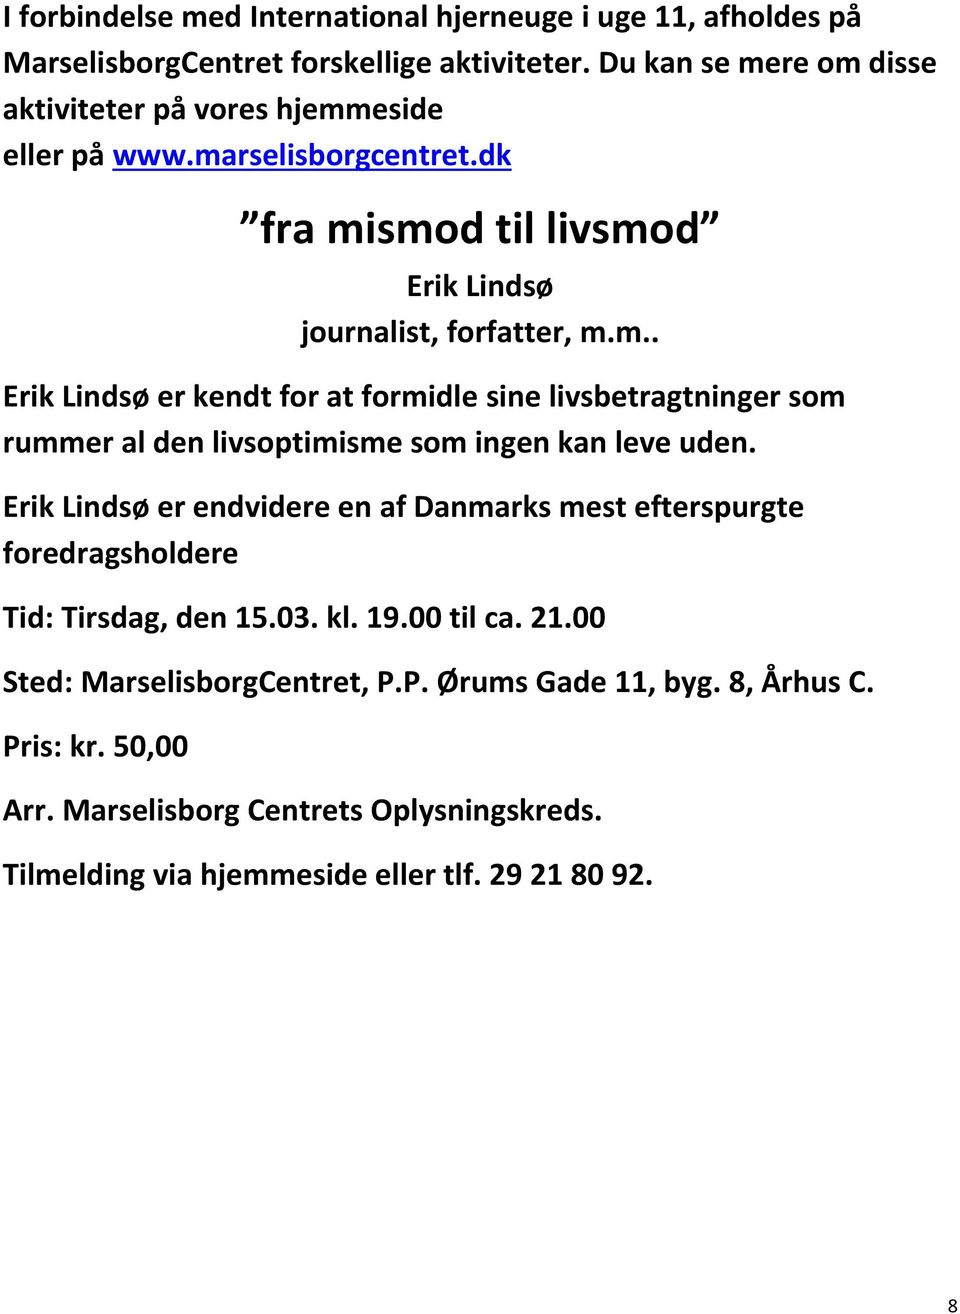 Erik Lindsø er endvidere en af Danmarks mest efterspurgte foredragsholdere Tid: Tirsdag, den 15.03. kl. 19.00 til ca. 21.00 Sted: MarselisborgCentret, P.